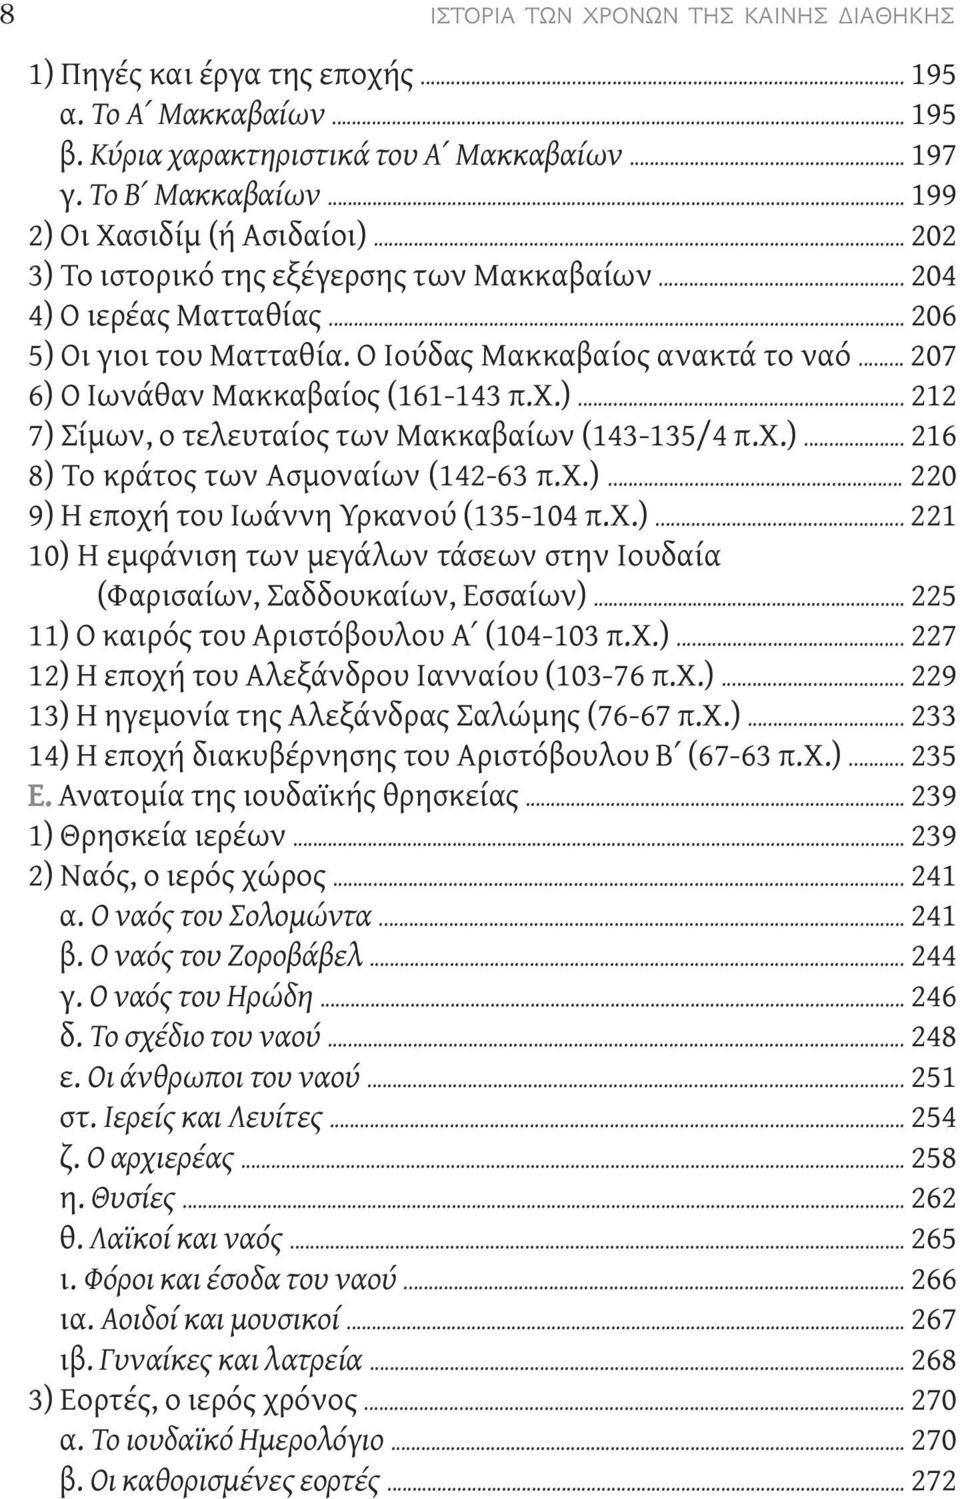 .. 207 6) Ο Ιωνάθαν Μακκαβαίος (161-143 π.χ.)... 212 7) Σίμων, ο τελευταίος των Μακκαβαίων (143-135/4 π.χ.)... 216 8) Το κράτος των Ασμοναίων (142-63 π.χ.)... 220 9) Η εποχή του Ιωάννη Υρκανού (135-104 π.